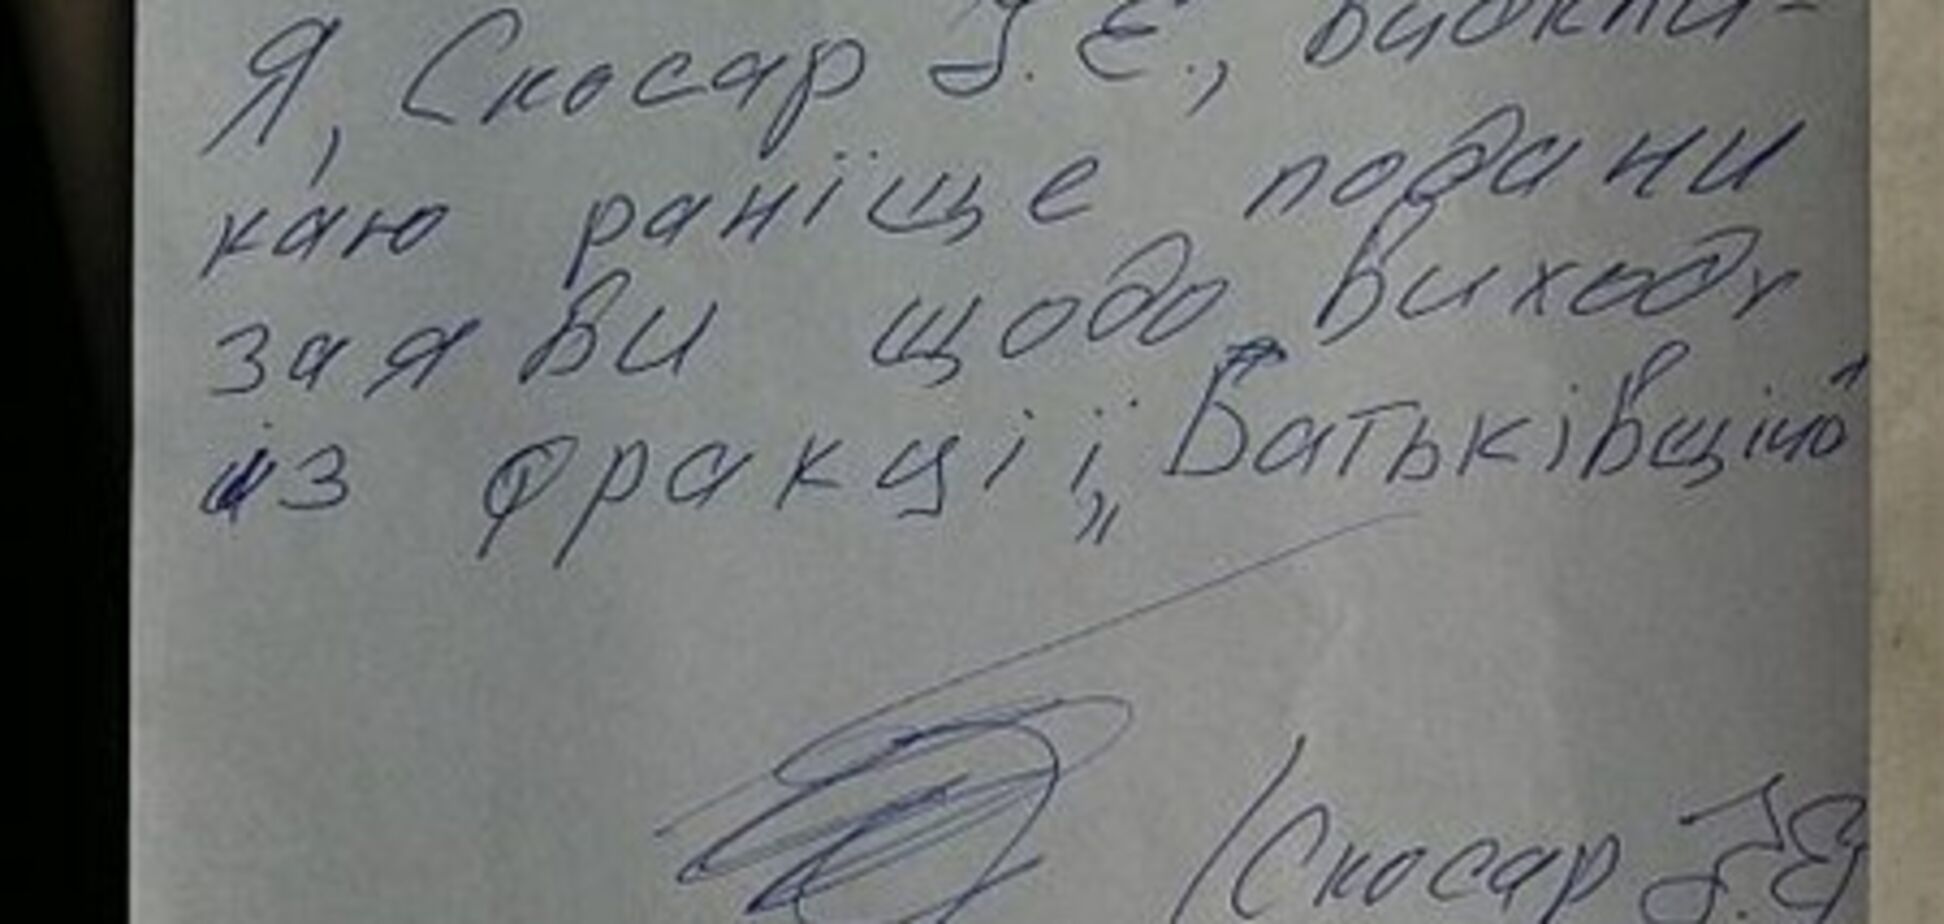 Перебежчик из 'Батьківщини' написал заявление с 7 ошибками. Документ